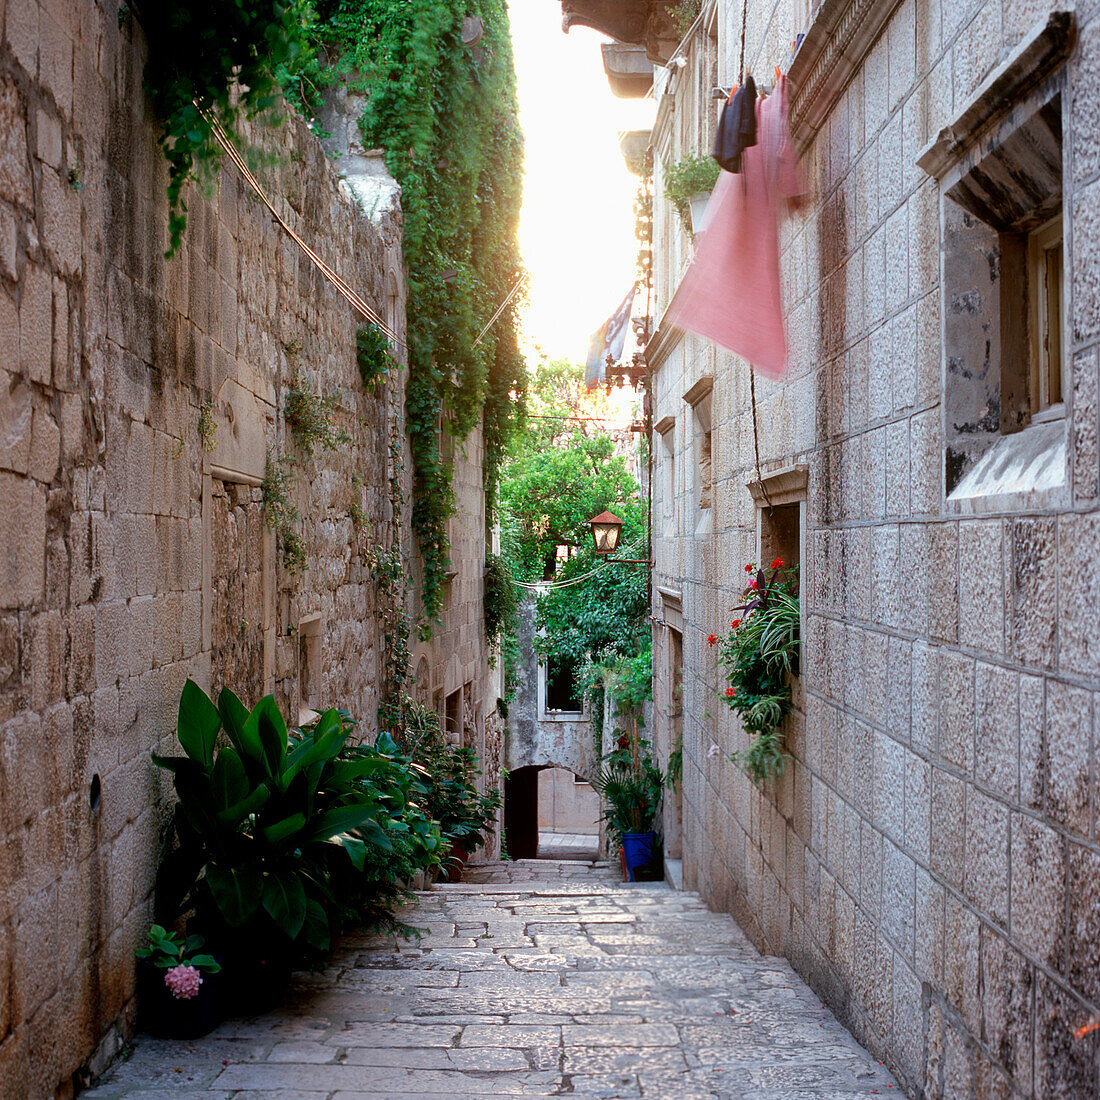 Blick in eine Gasse mit alten Steinhäusern und Wäscheleinen an den Fassaden, Korcula, Dalmatien, Kroatien